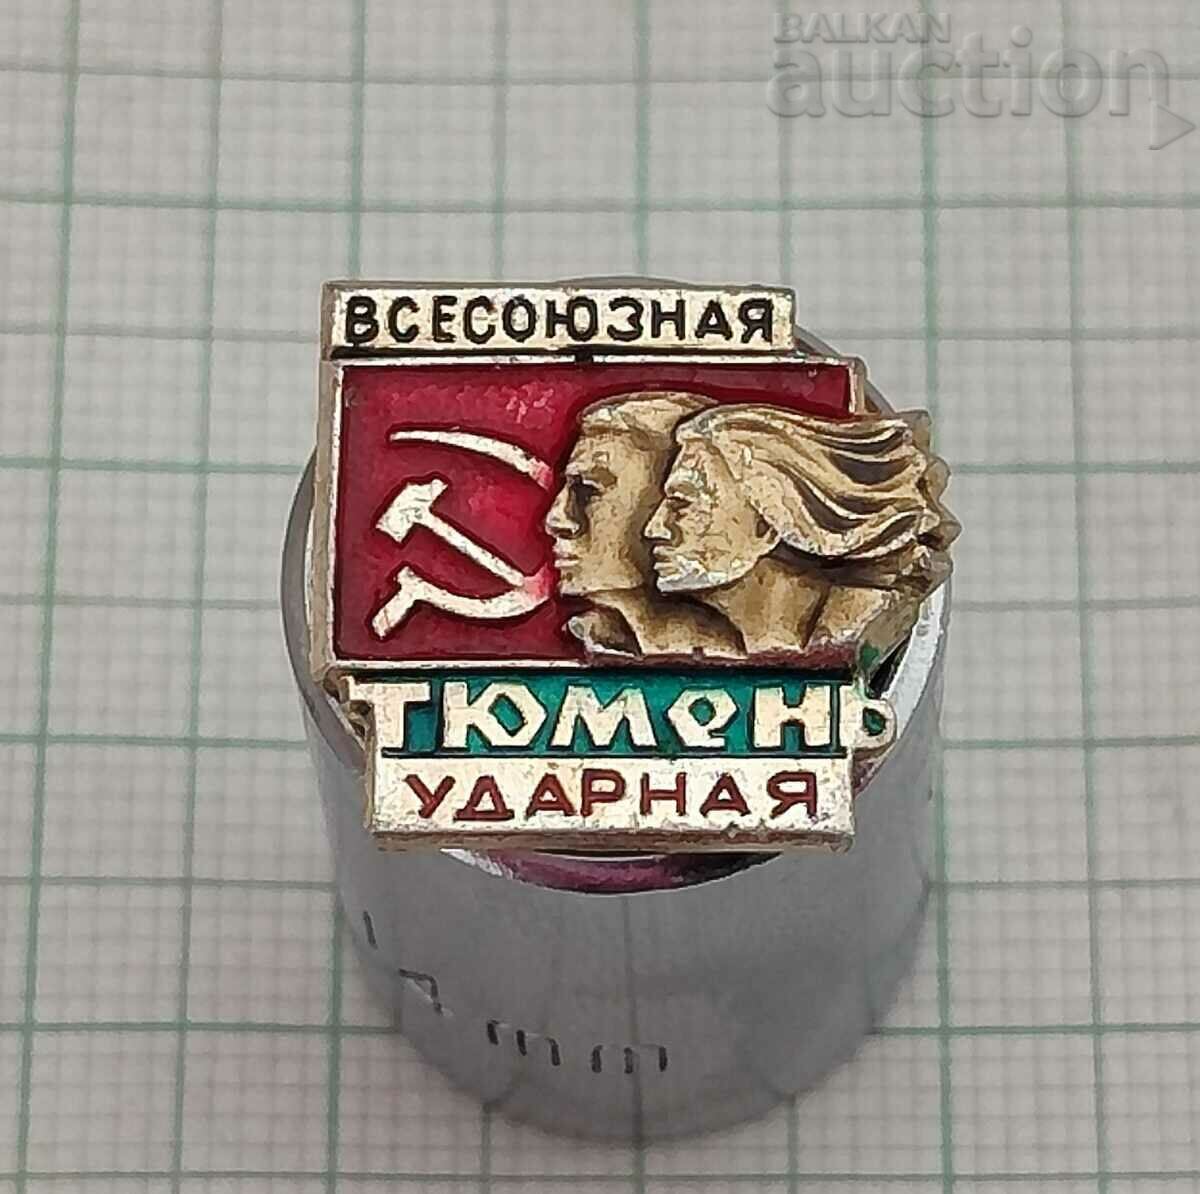 TYUMEN BRIGADA DE GRĂVĂ A UNIONĂRII TOTALE INSIGNA URSS